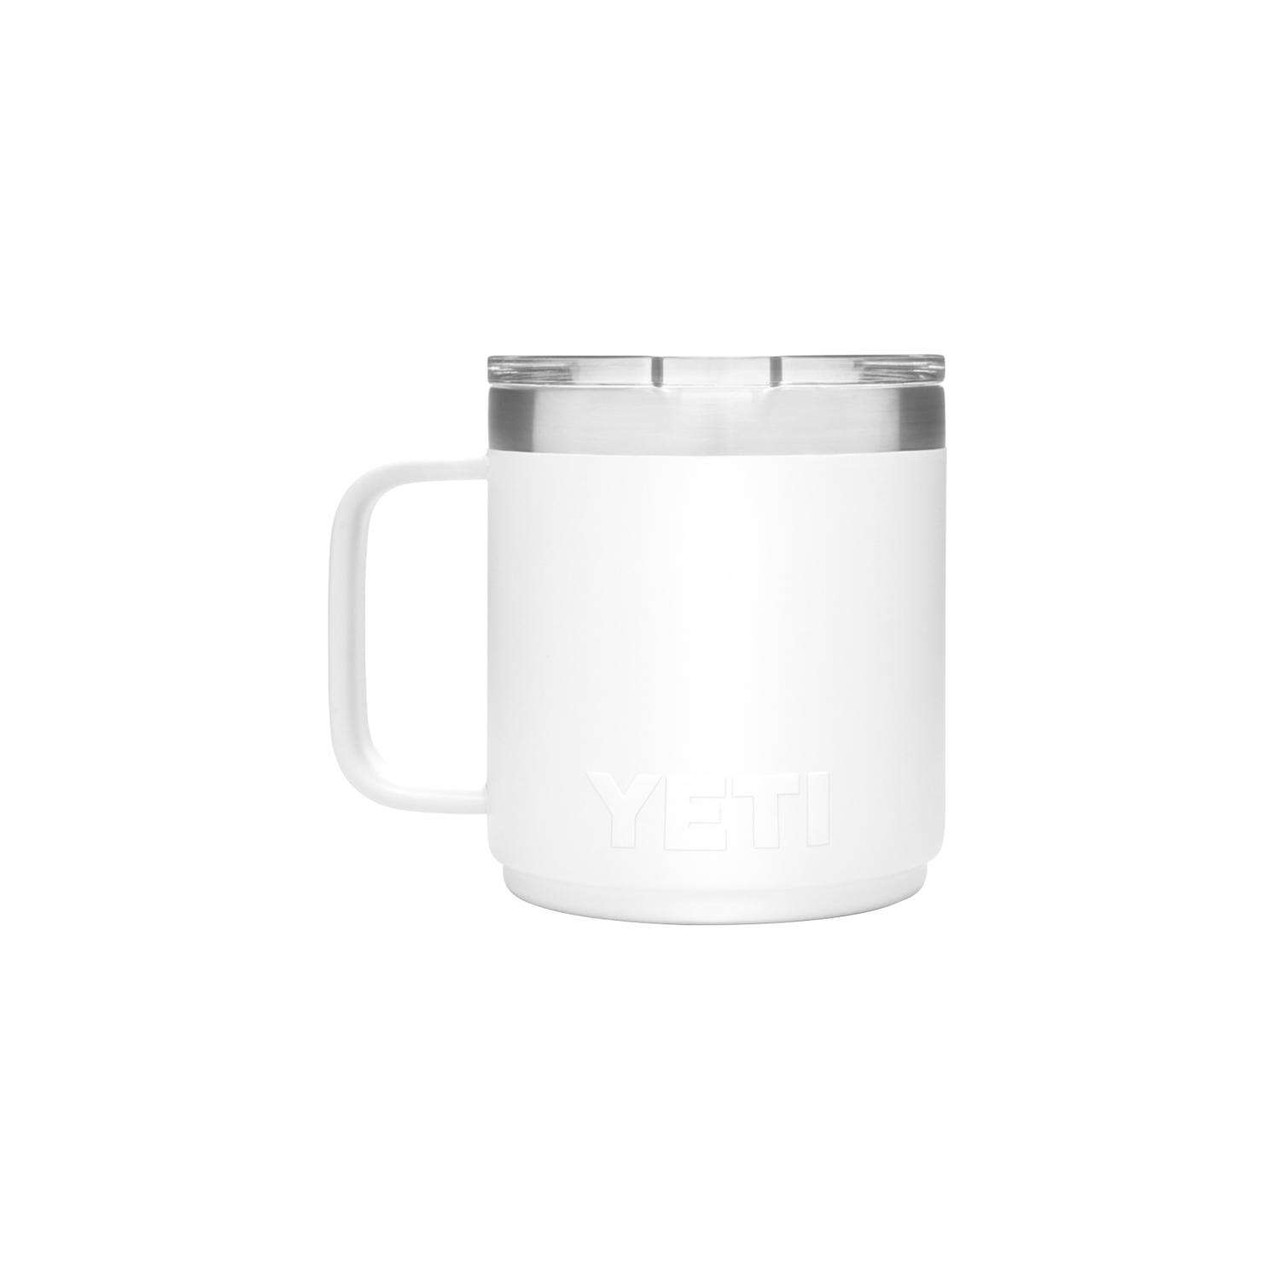 Yeti Mug, Yeti 10 oz stackable Mug